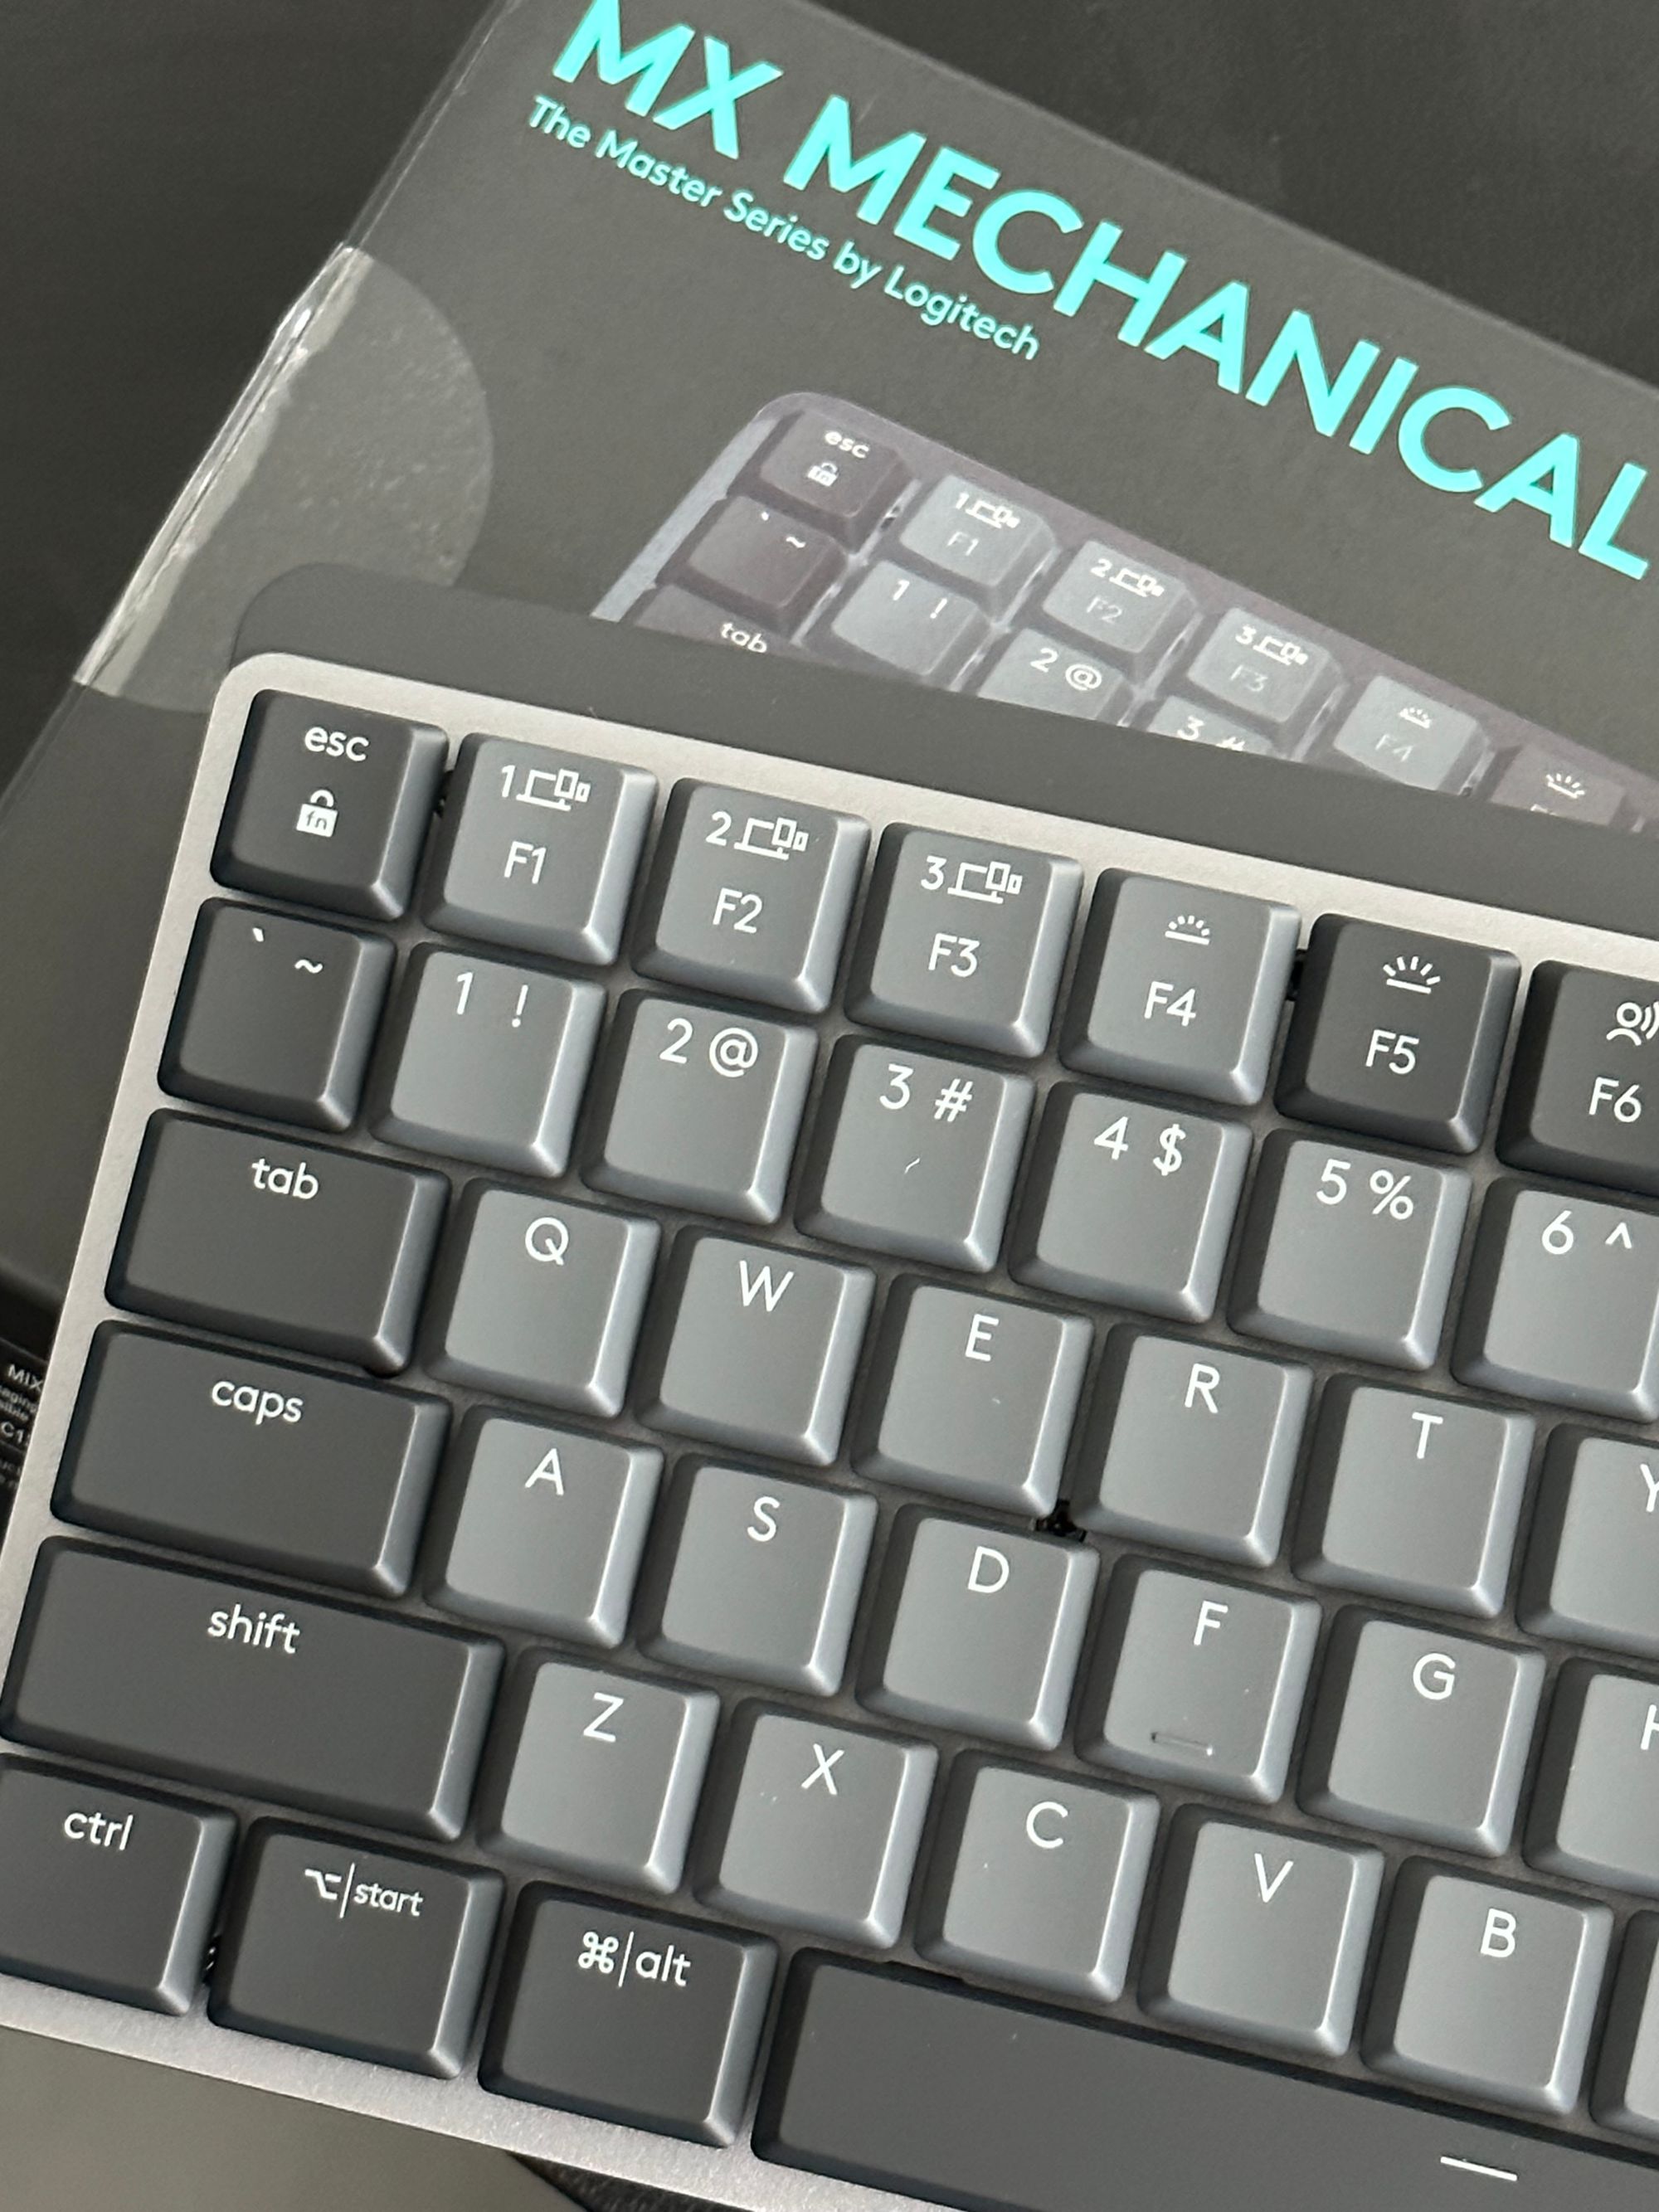 The mechanical keyboard